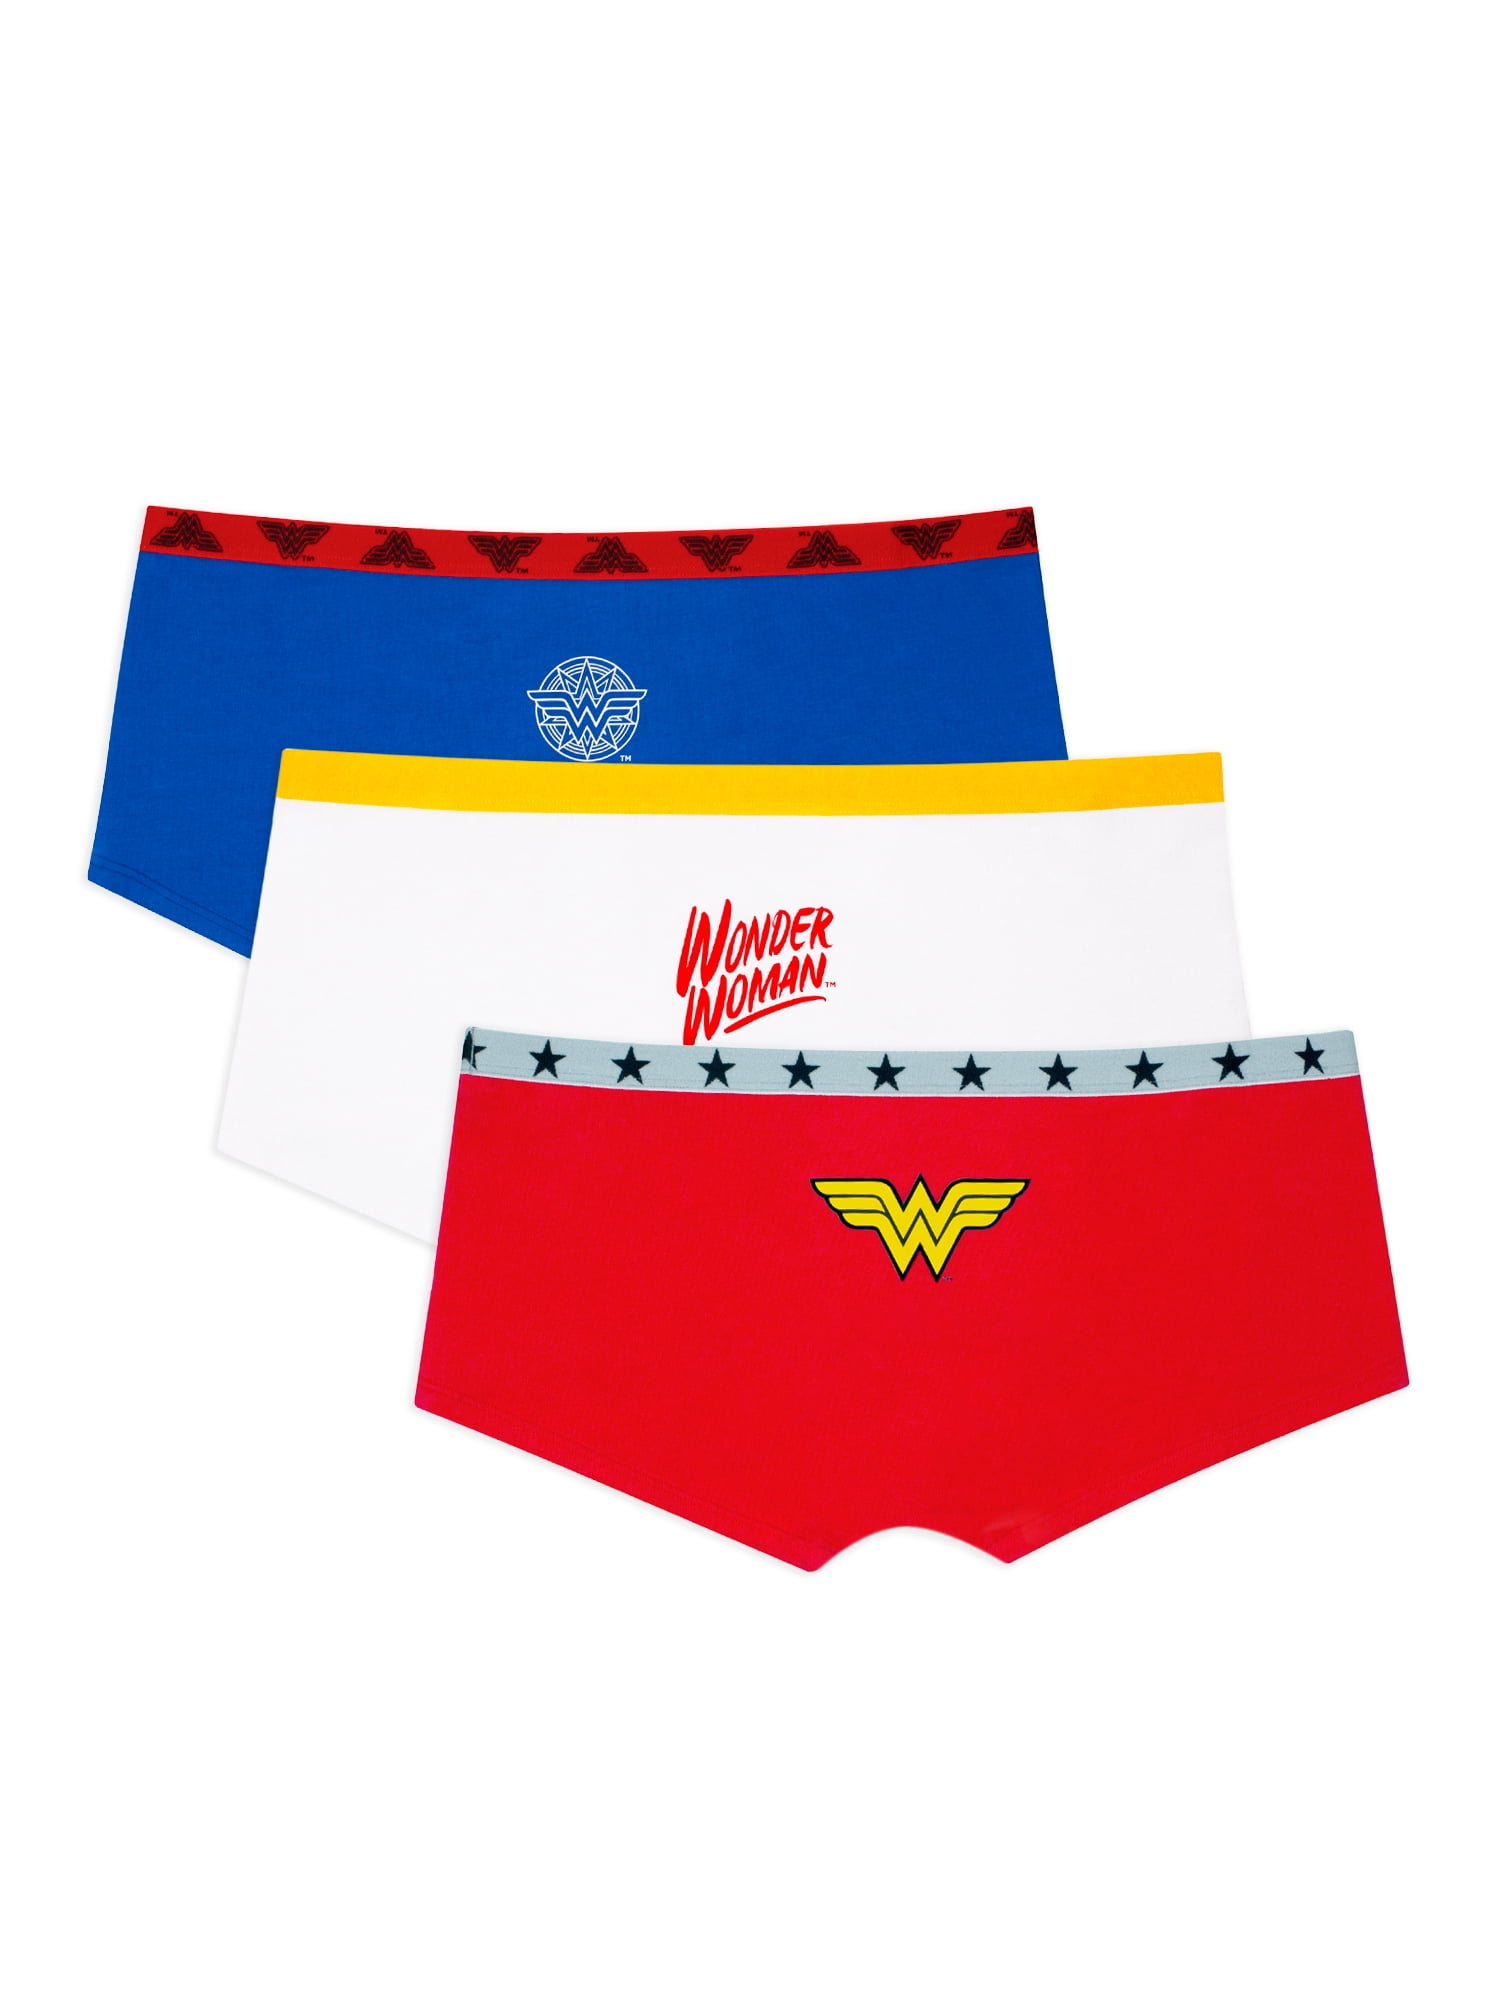 Fruit of the Loom Women's Wonder Woman Boyshort Panties, 3-Pack